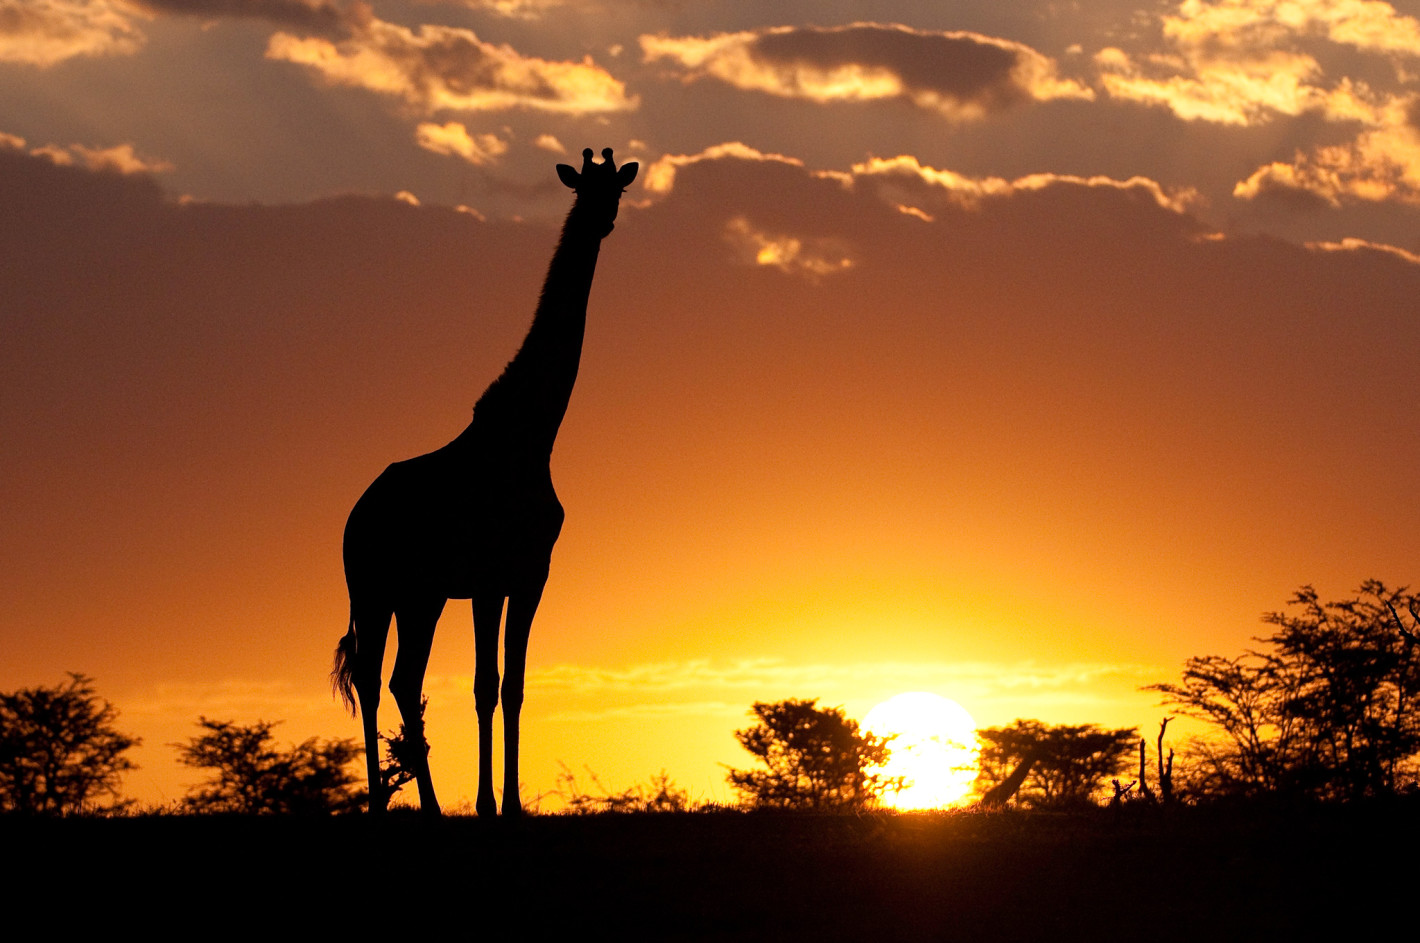 Giraffe-silhouette-in-Africa